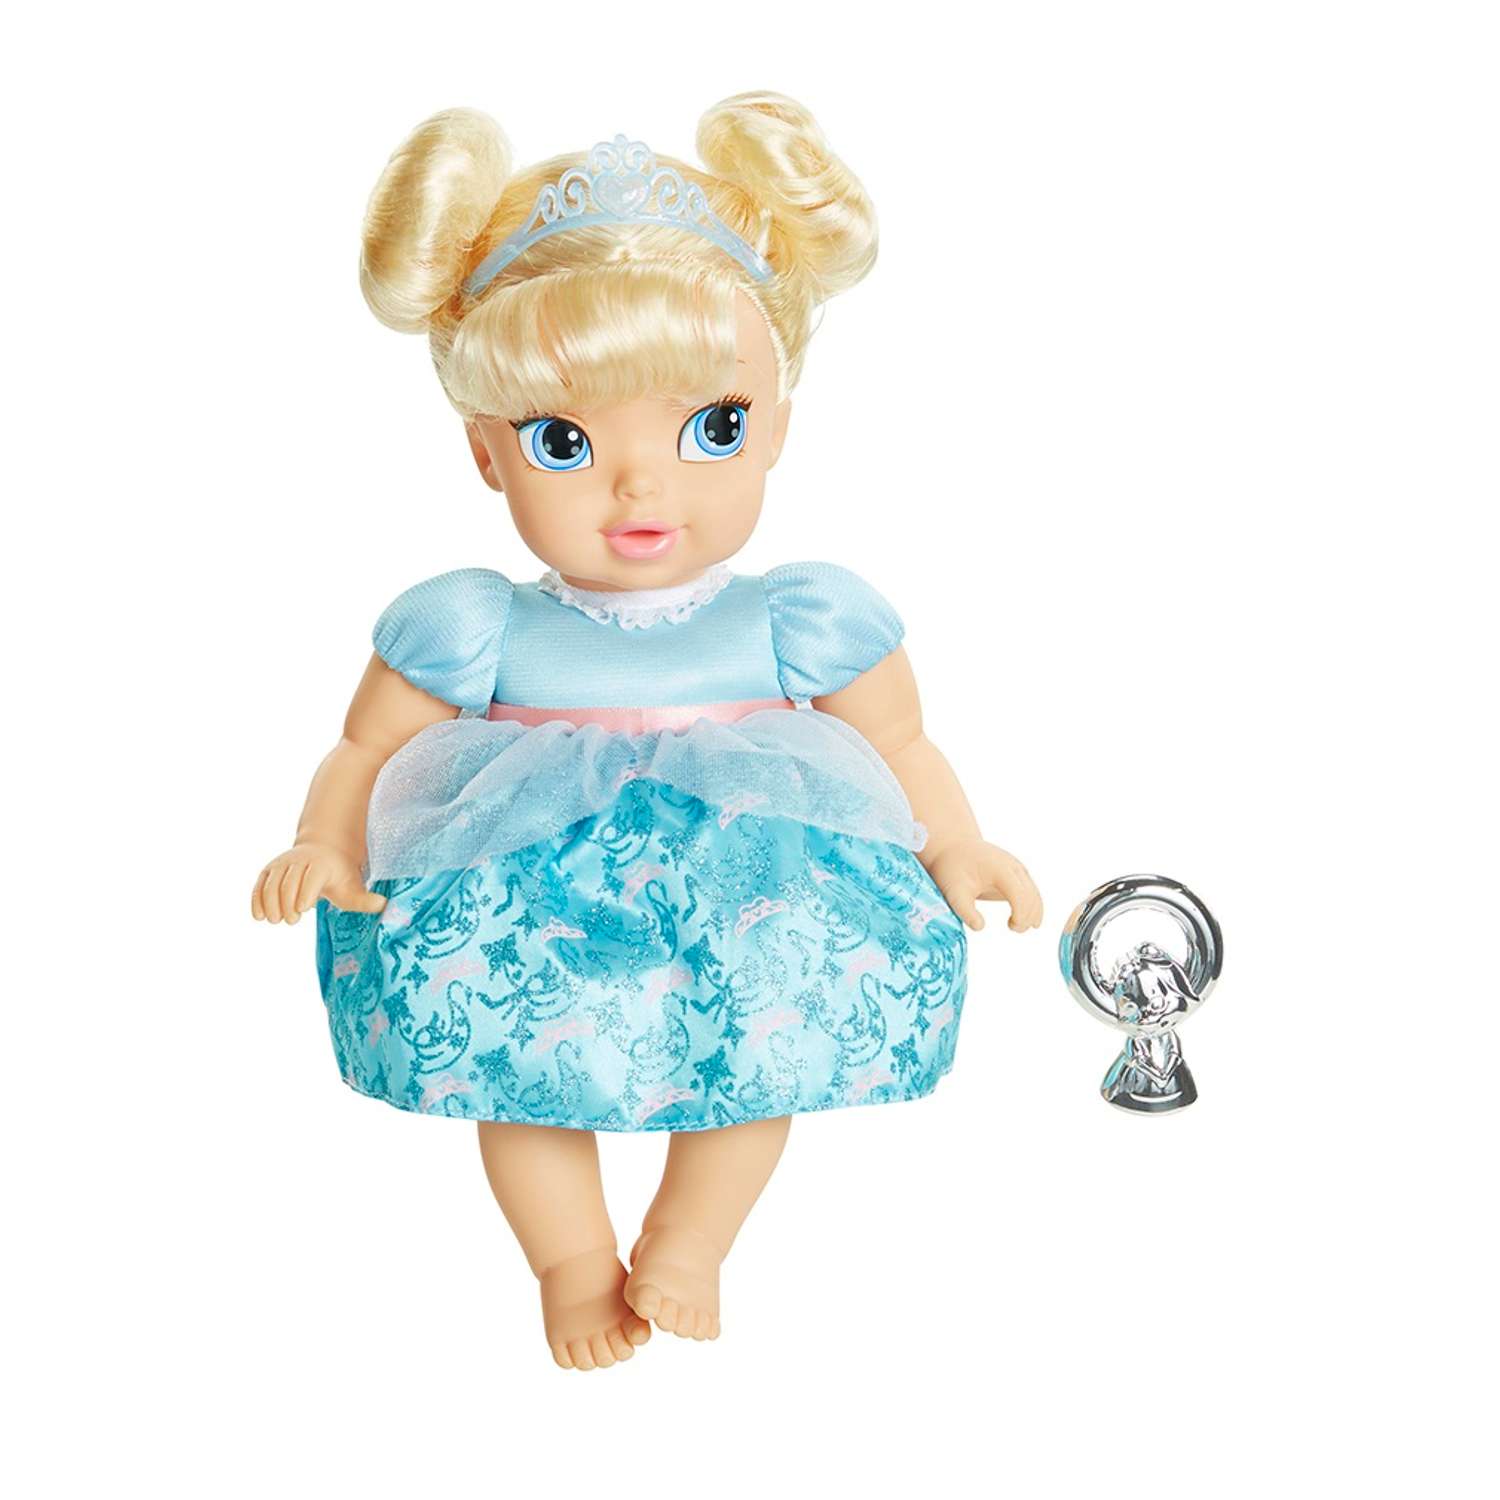 Принцесса малышка s класса. Princess Baby Cinderella кукла. Кукла Золушка малышка Дисней. Кукла Disney малышка Золушка оригинал. Кукла Jakks Pacific Disney Princess малышка Золушка, 35 см, 750050-1.